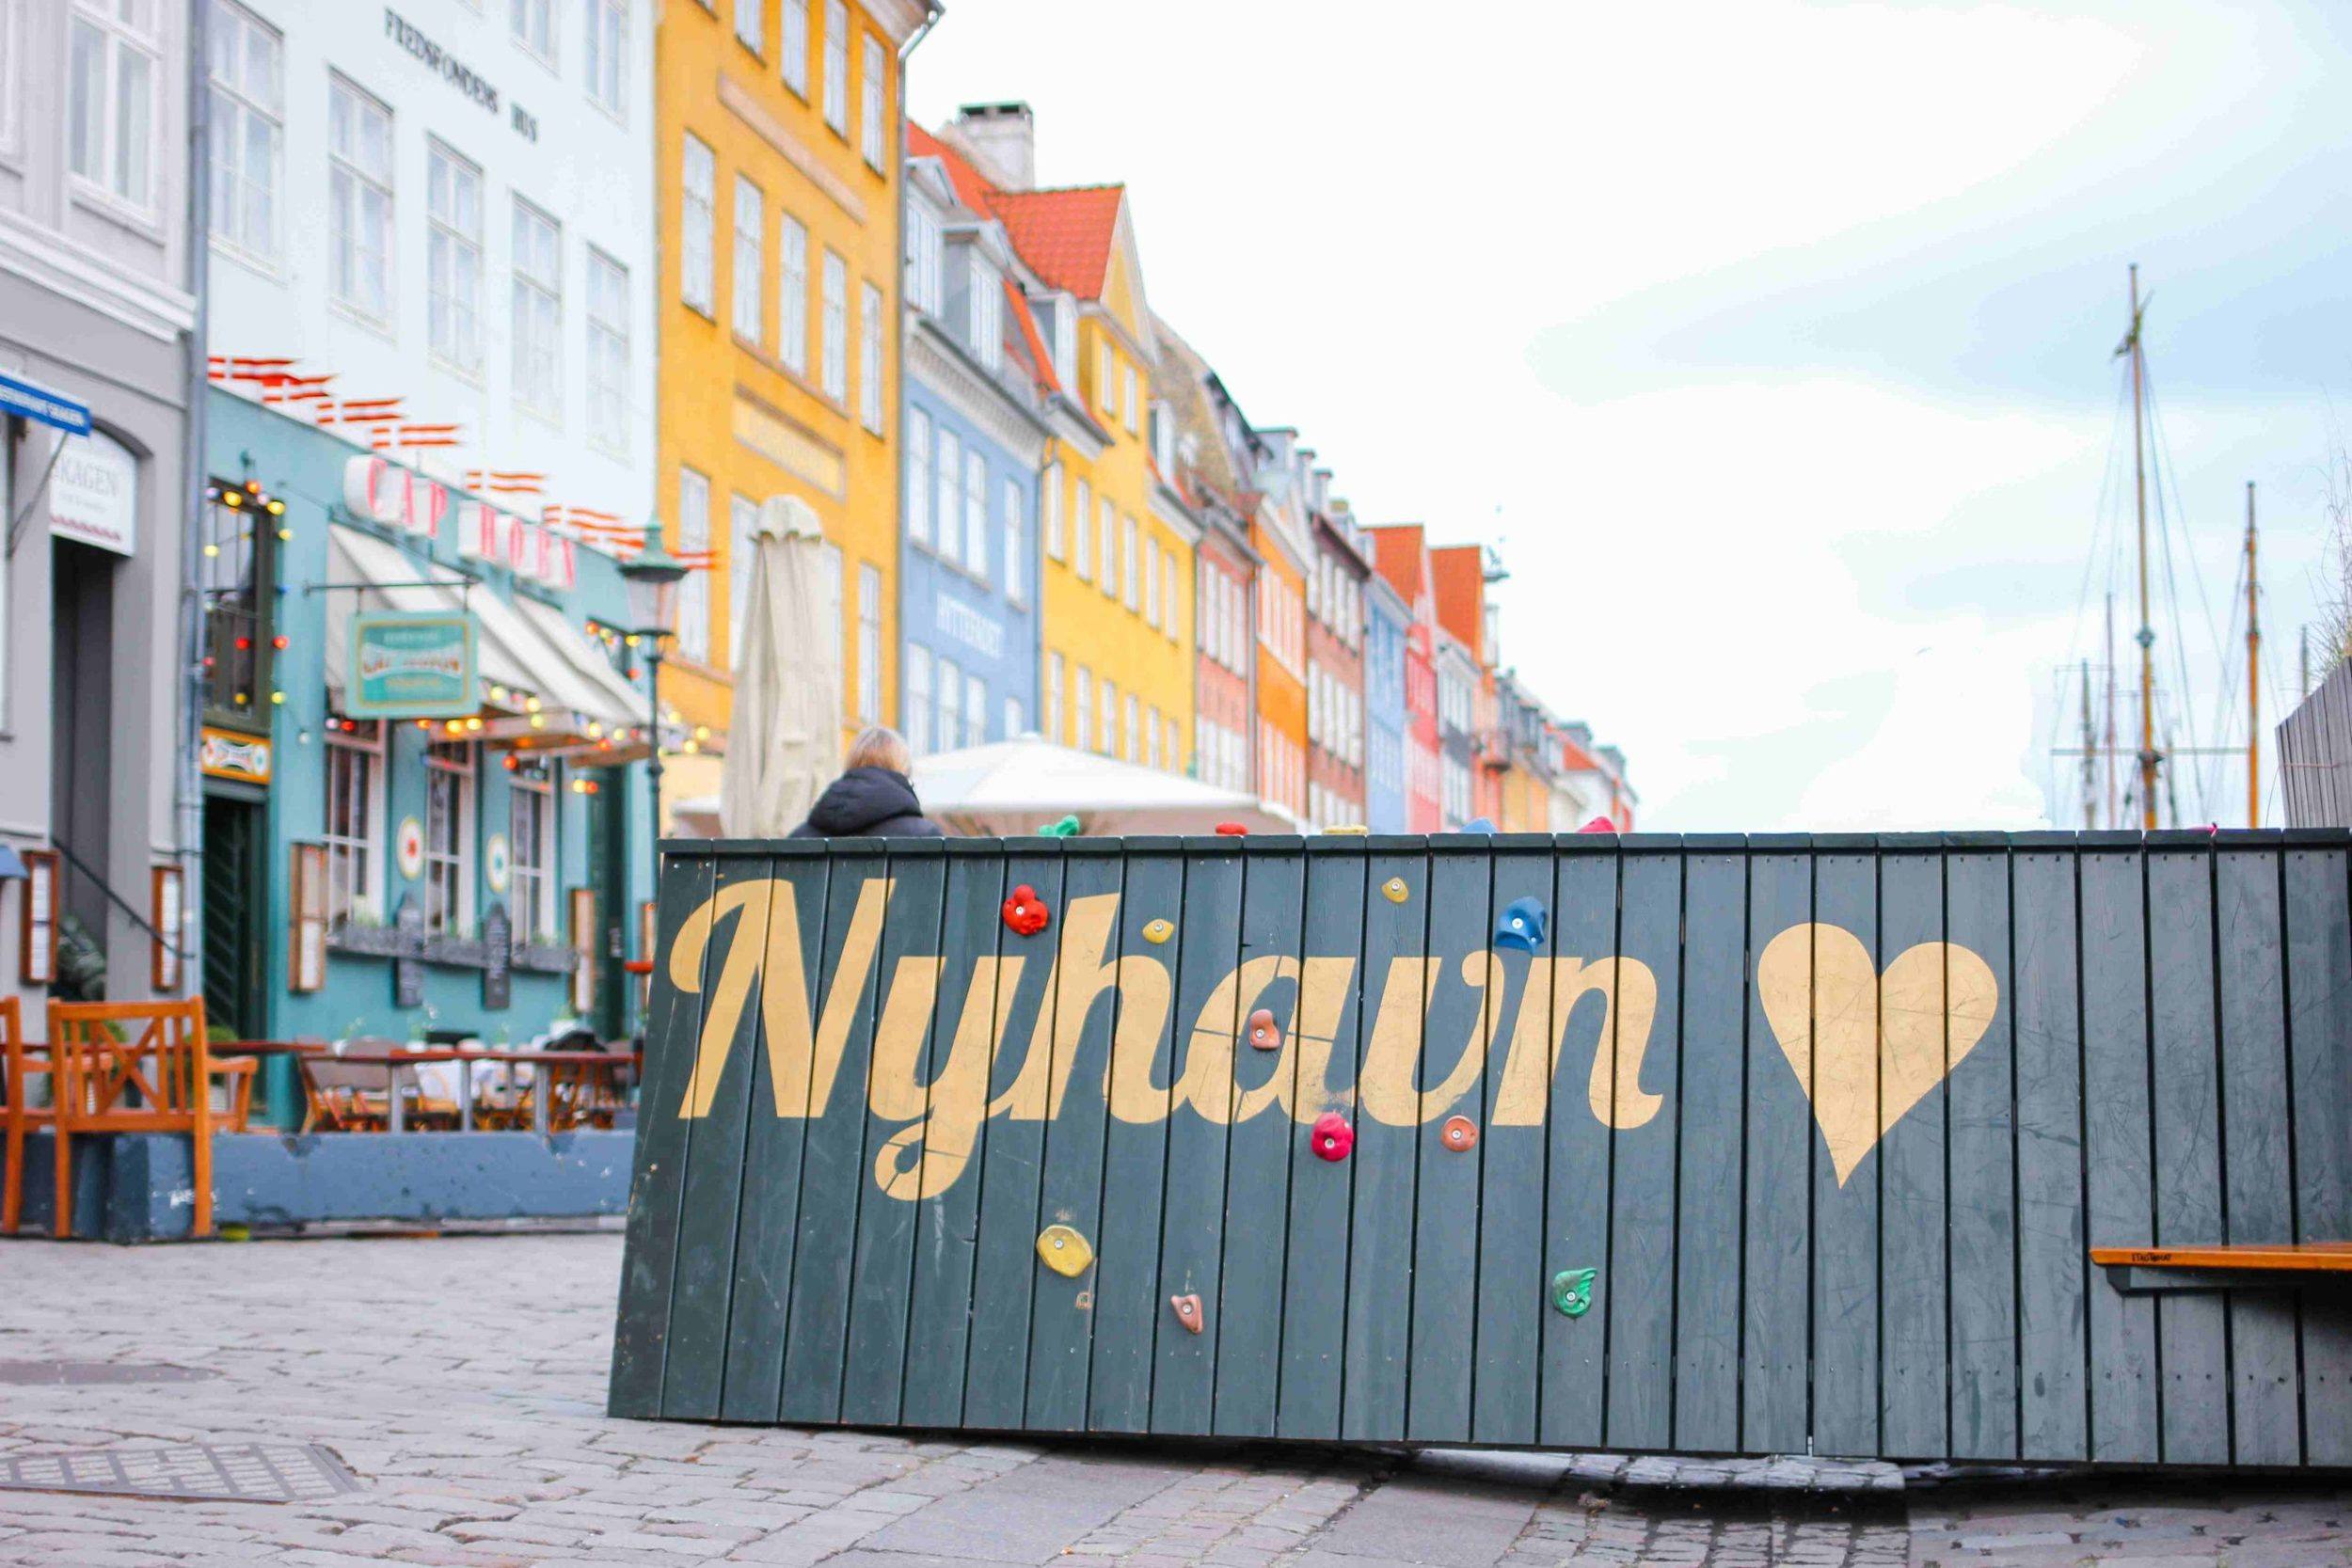 Nyhavn climbing neighborhood